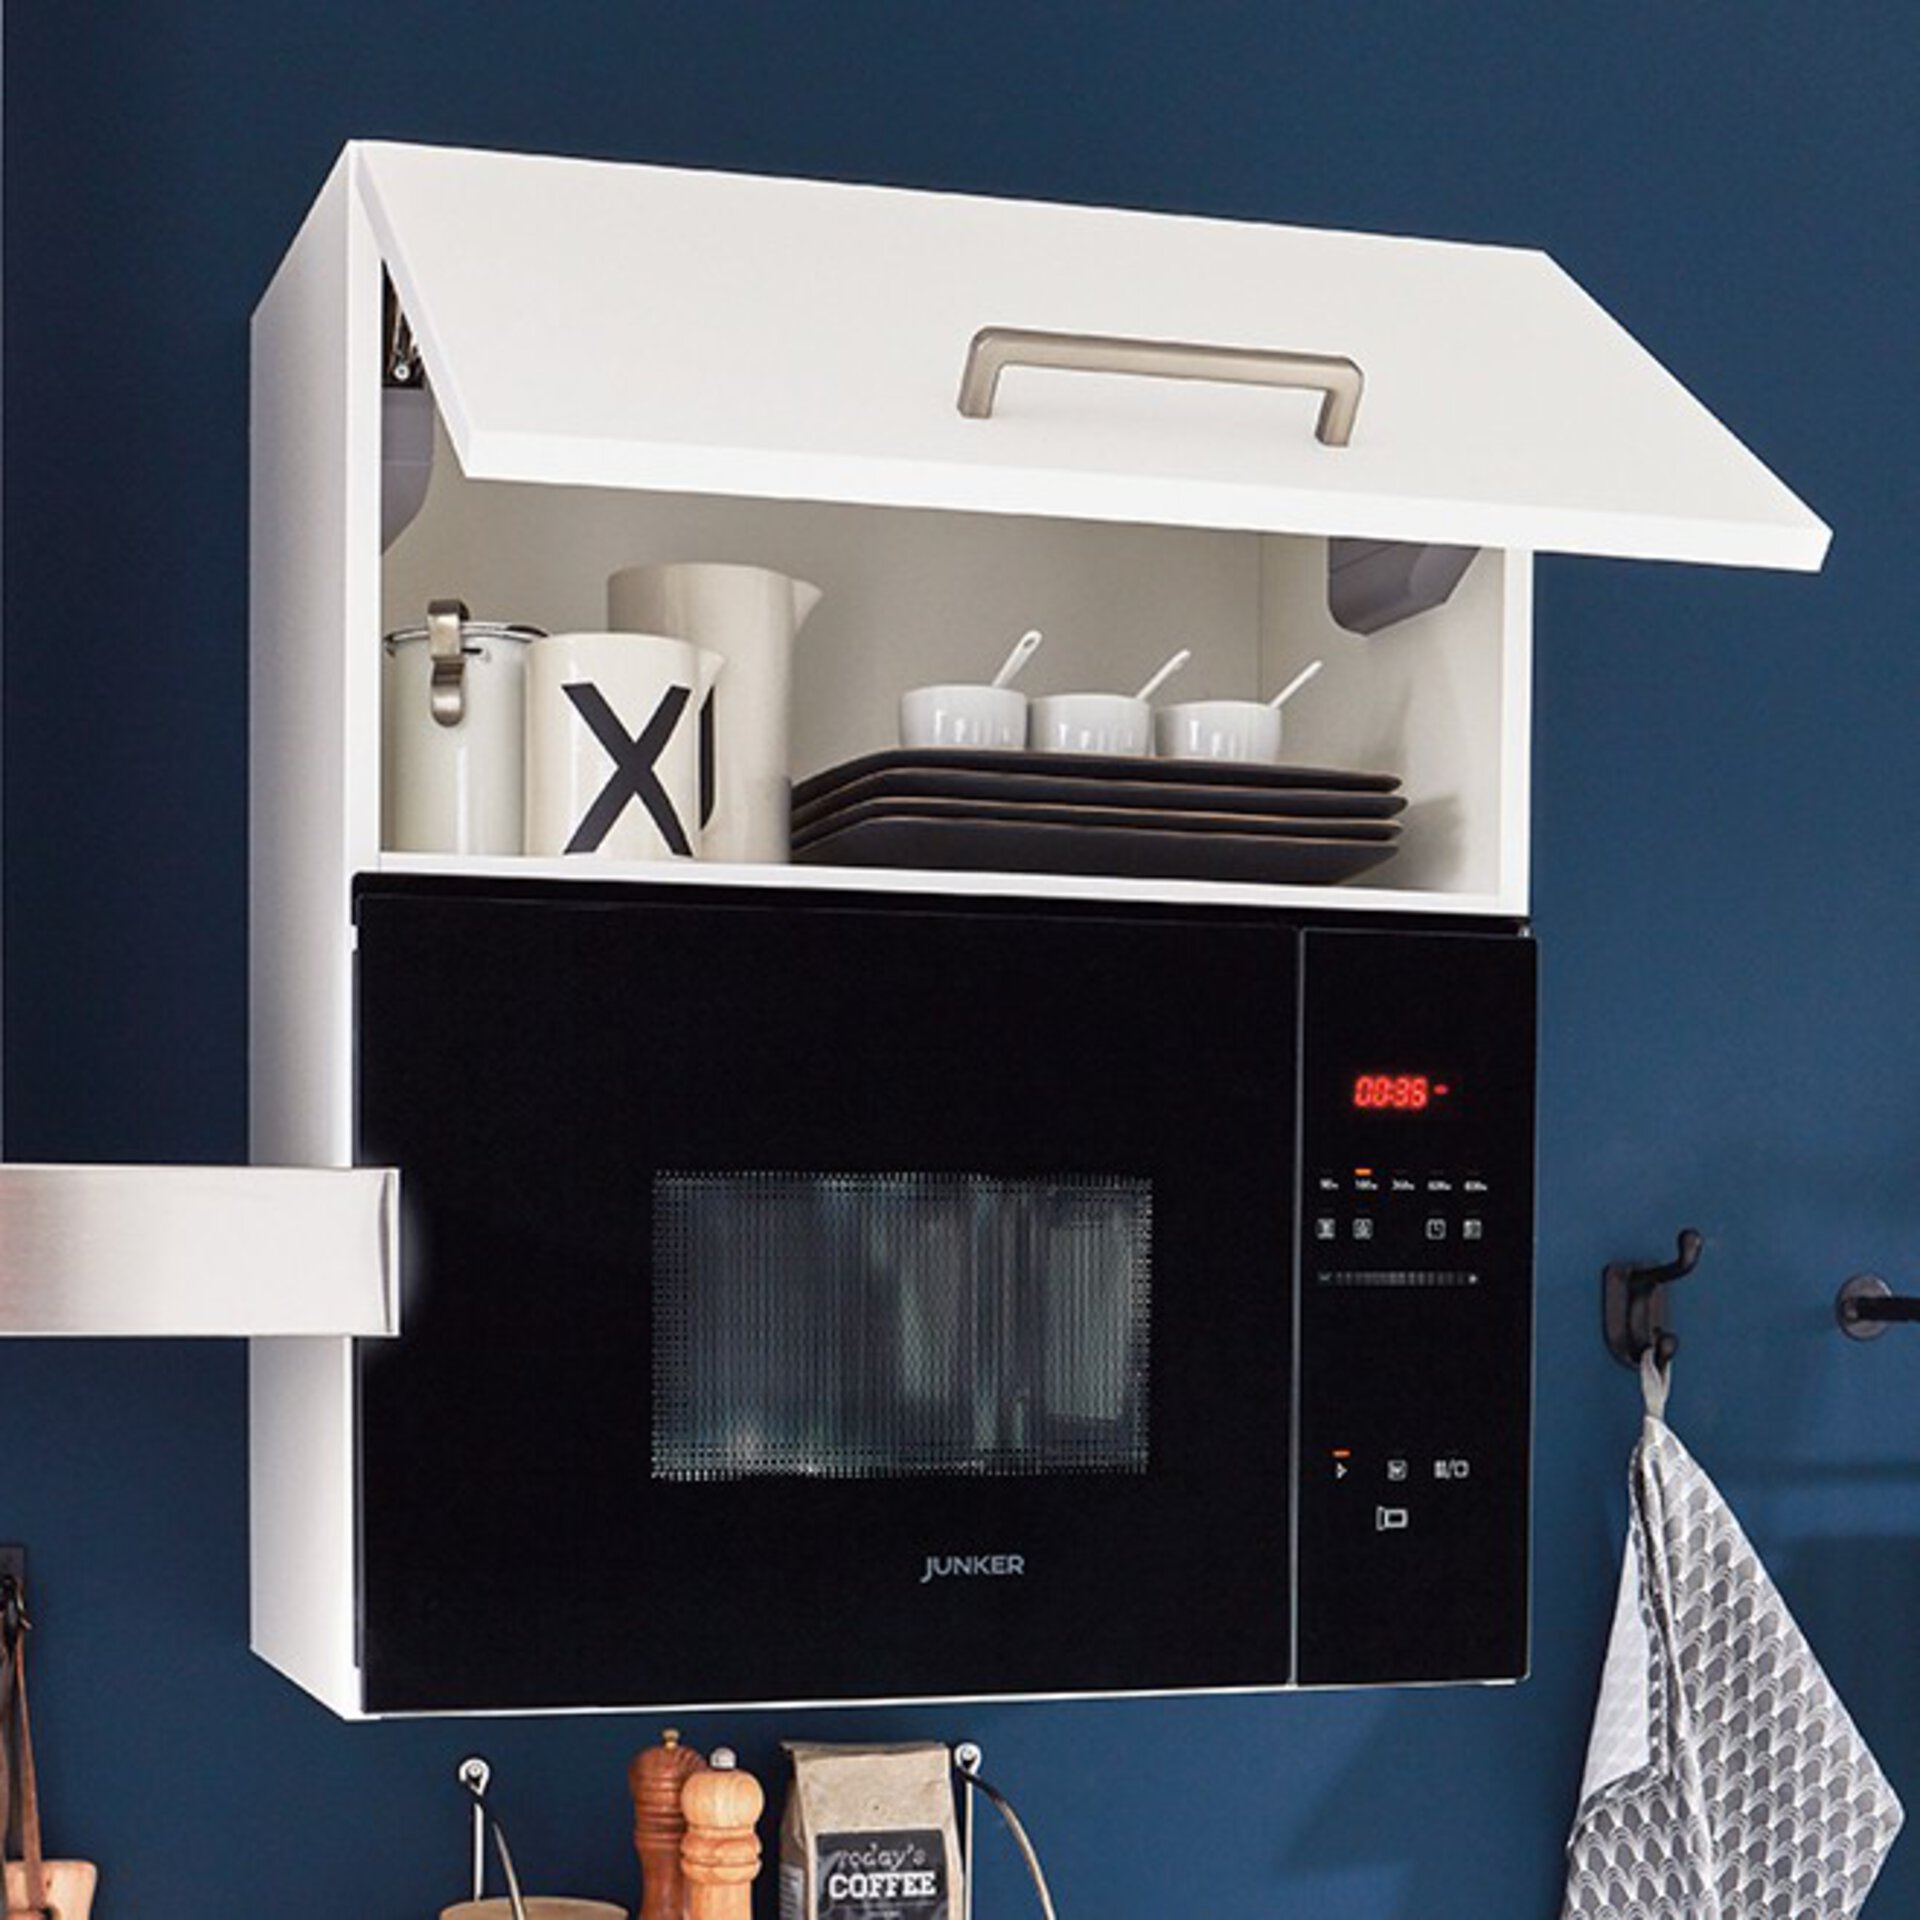 Dampfgarer, Mikrowelle und mehr - praktische Zusazugeräte für die Küche bei Möbel Inhofer entdecken